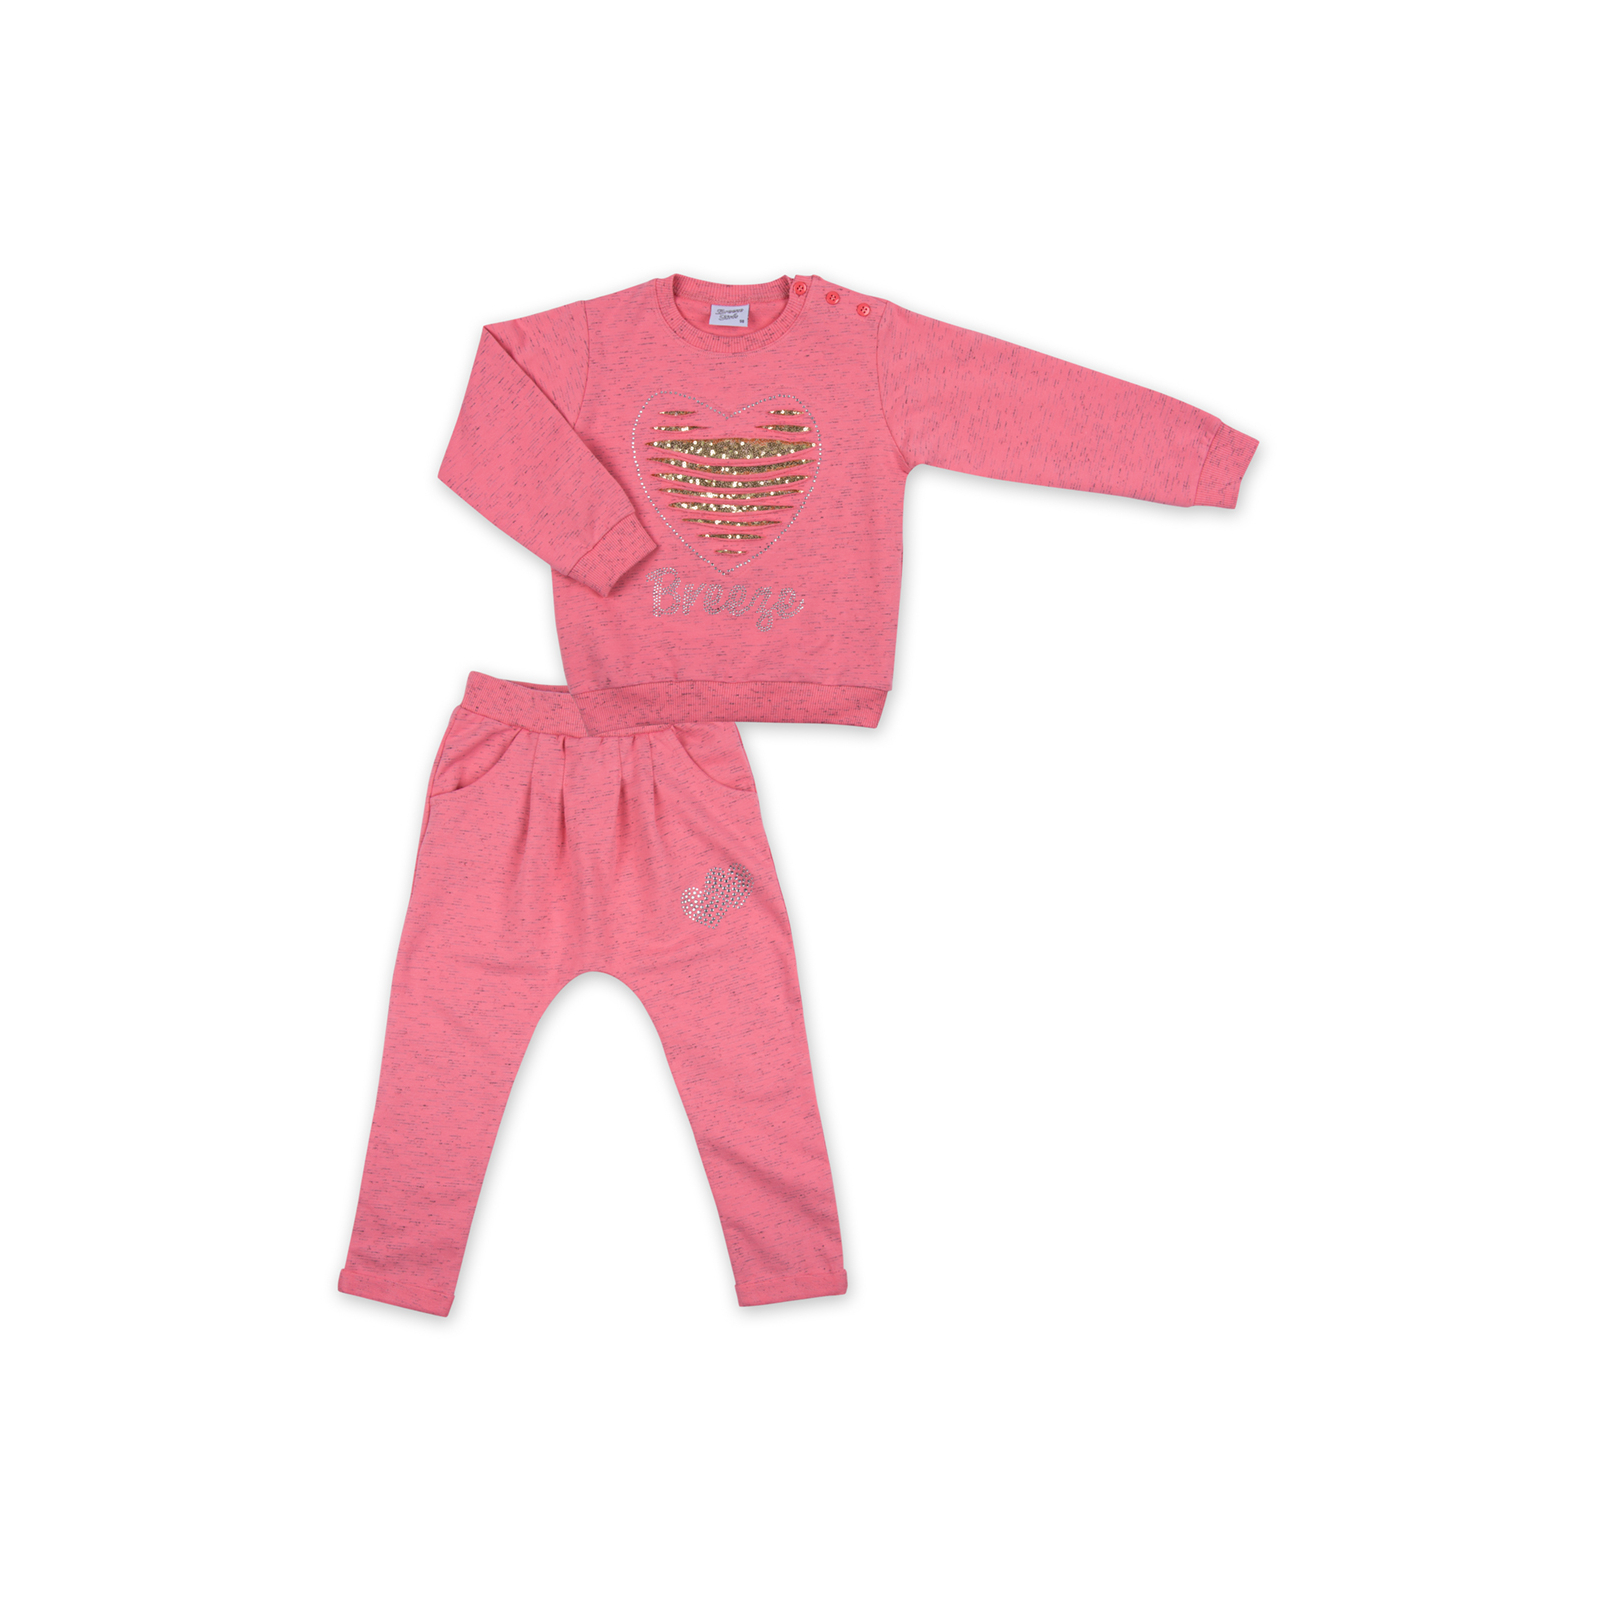 Набор детской одежды Breeze кофта и брюки персиковый меланж (8013-104G-peach)